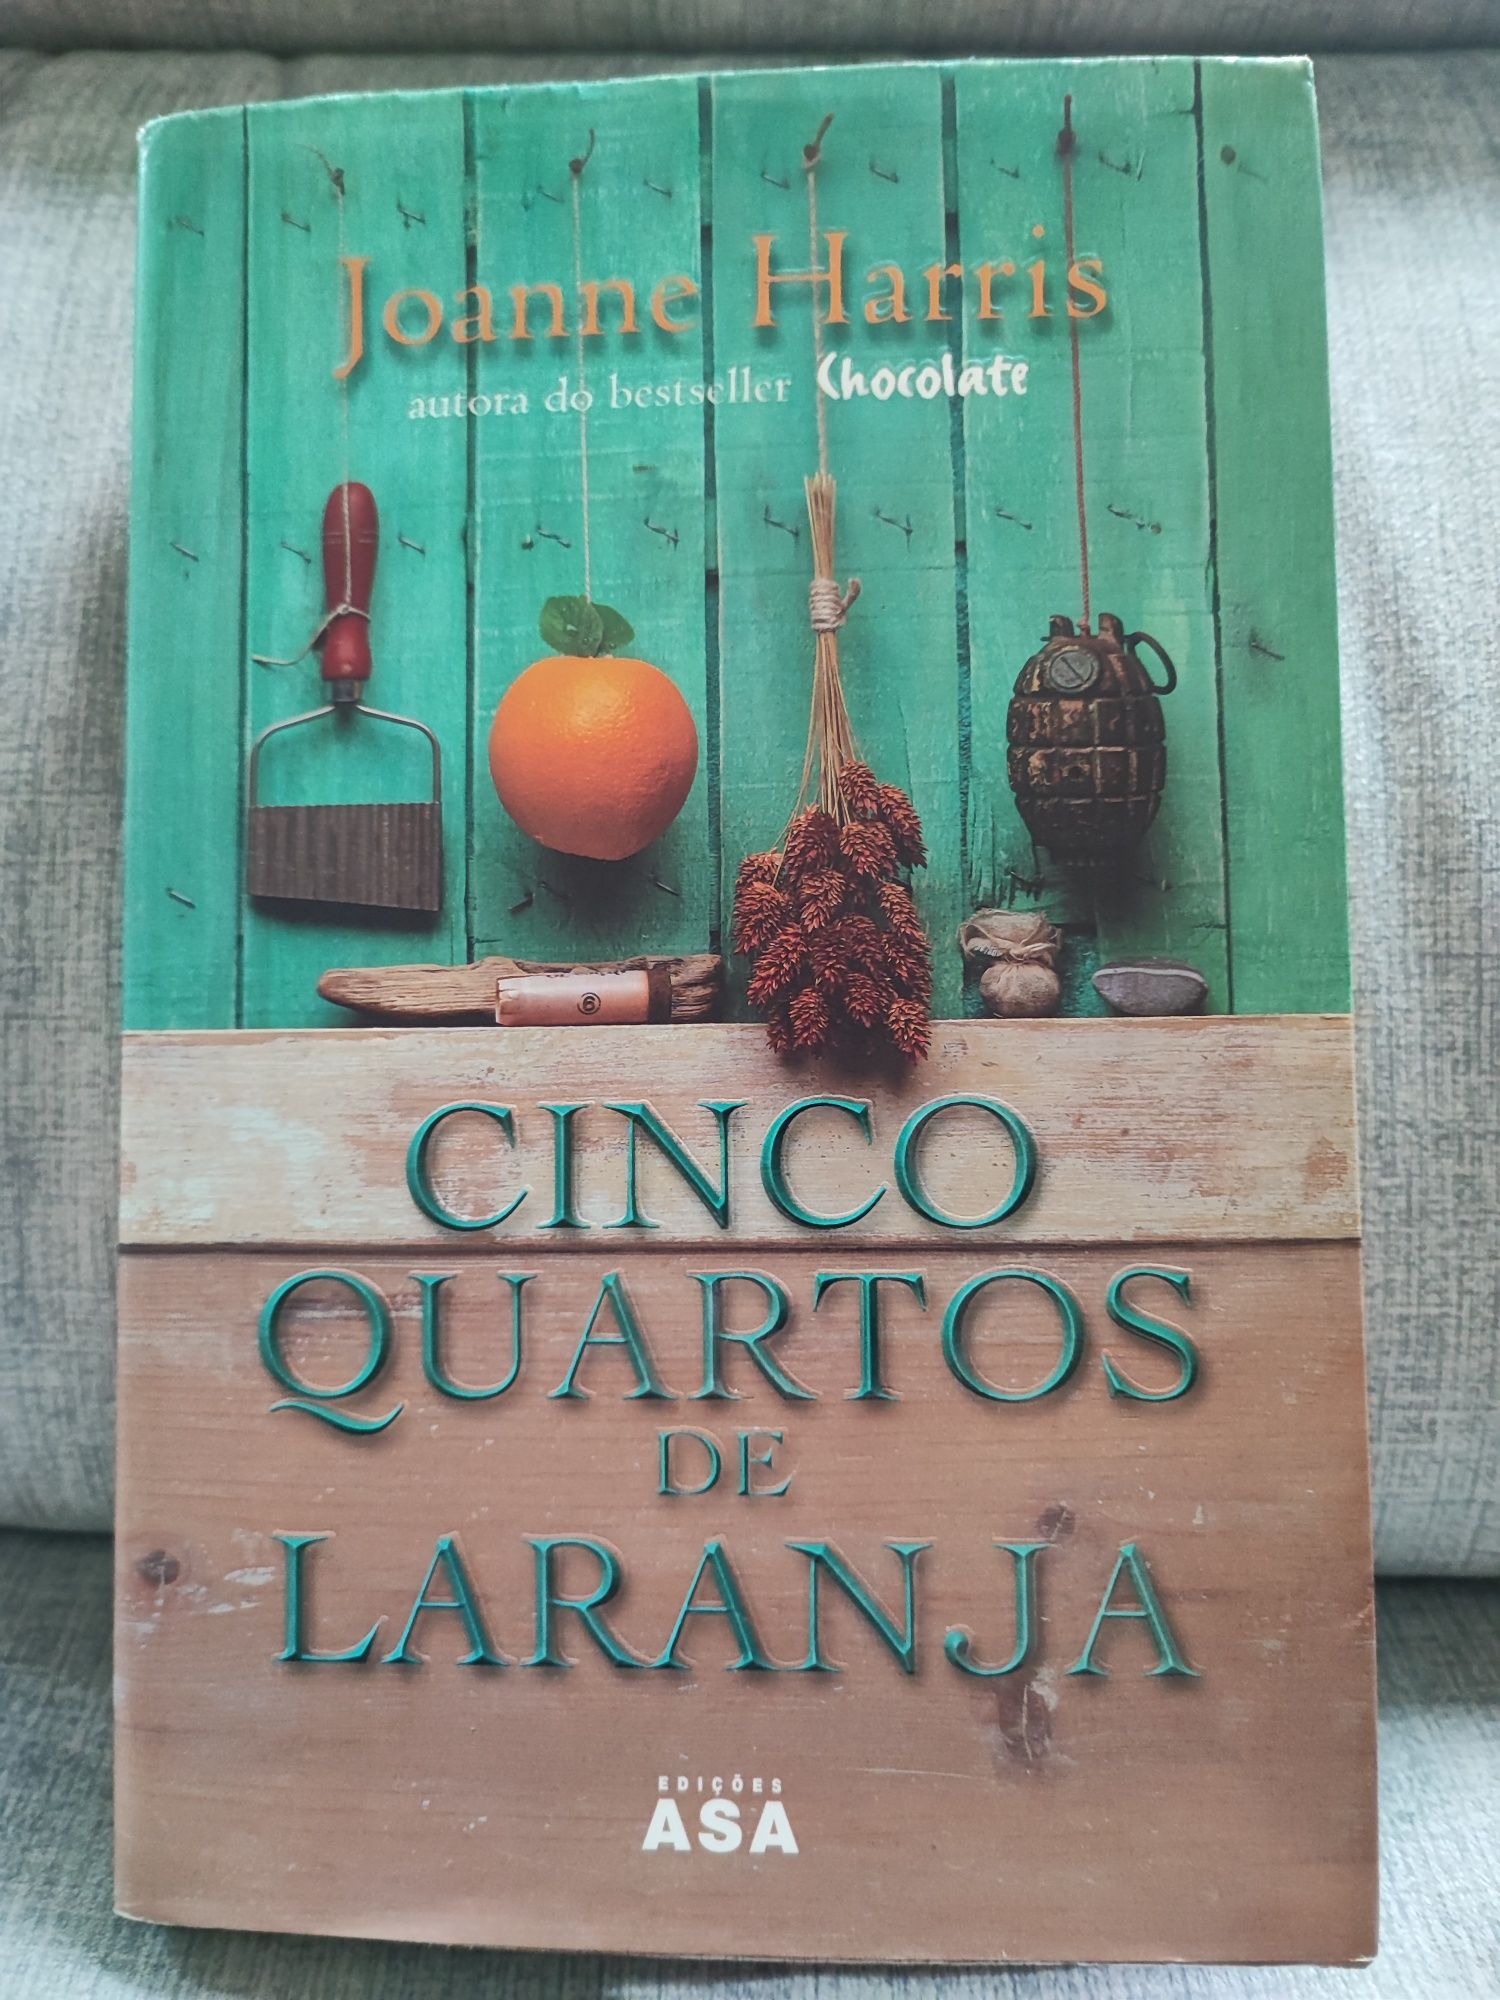 Livro "Cinco Quartos de Laranja", de Joanne Harris